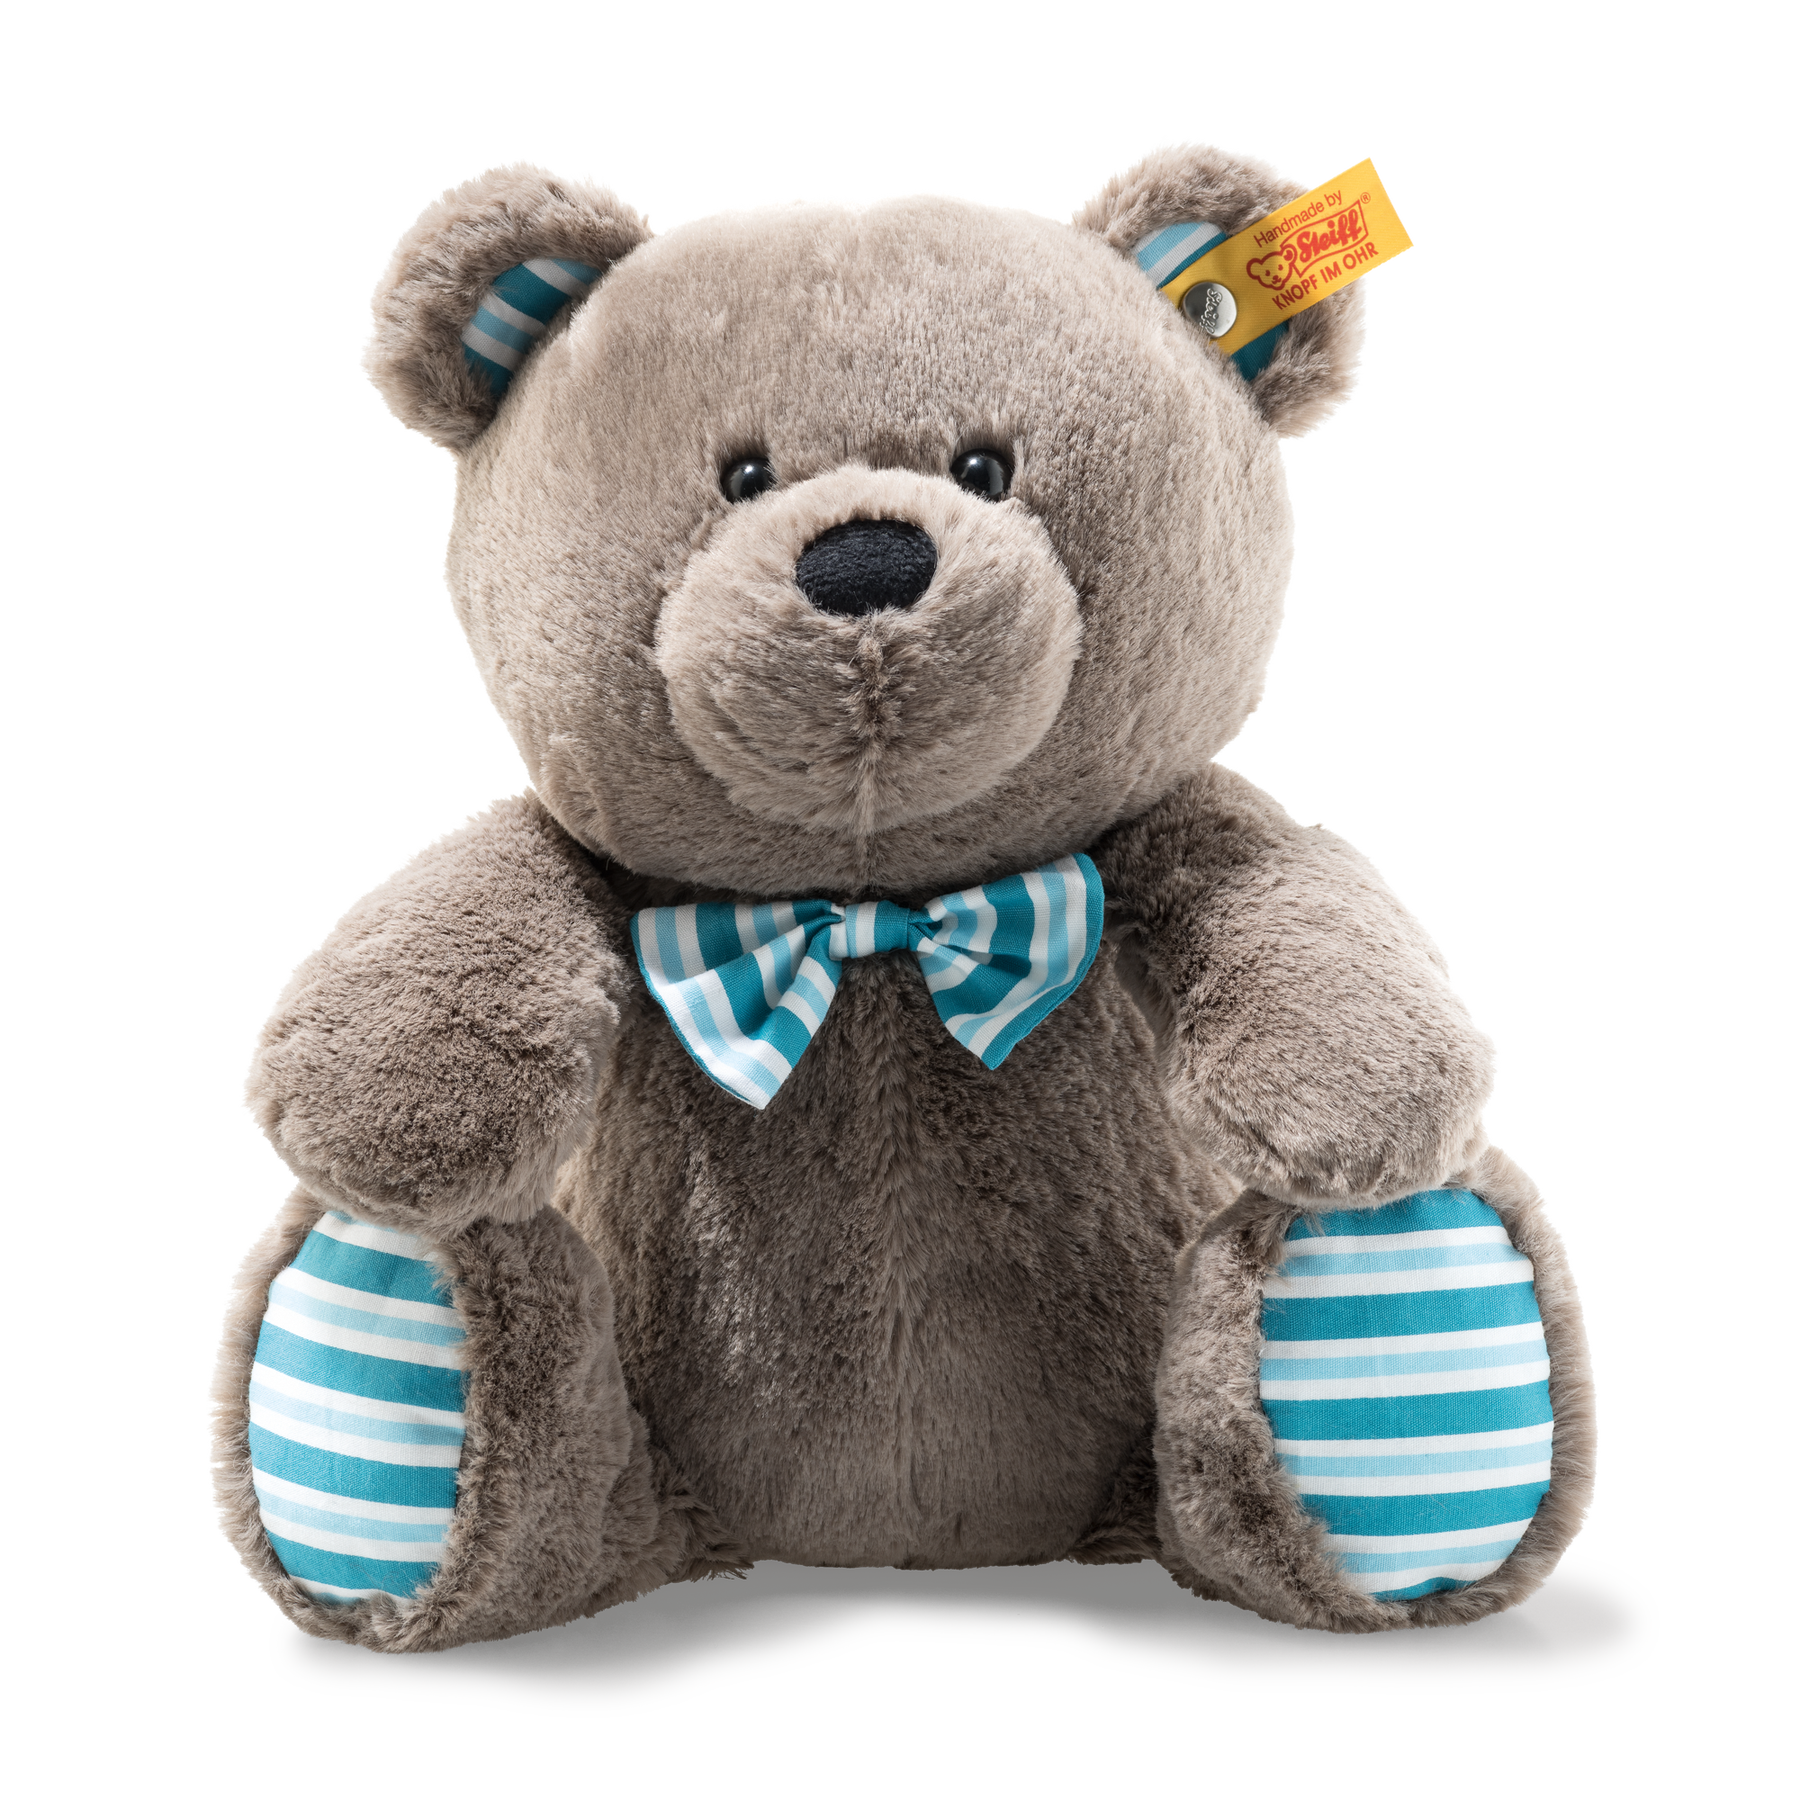 Soft Cuddly Friends Boris Teddy bear